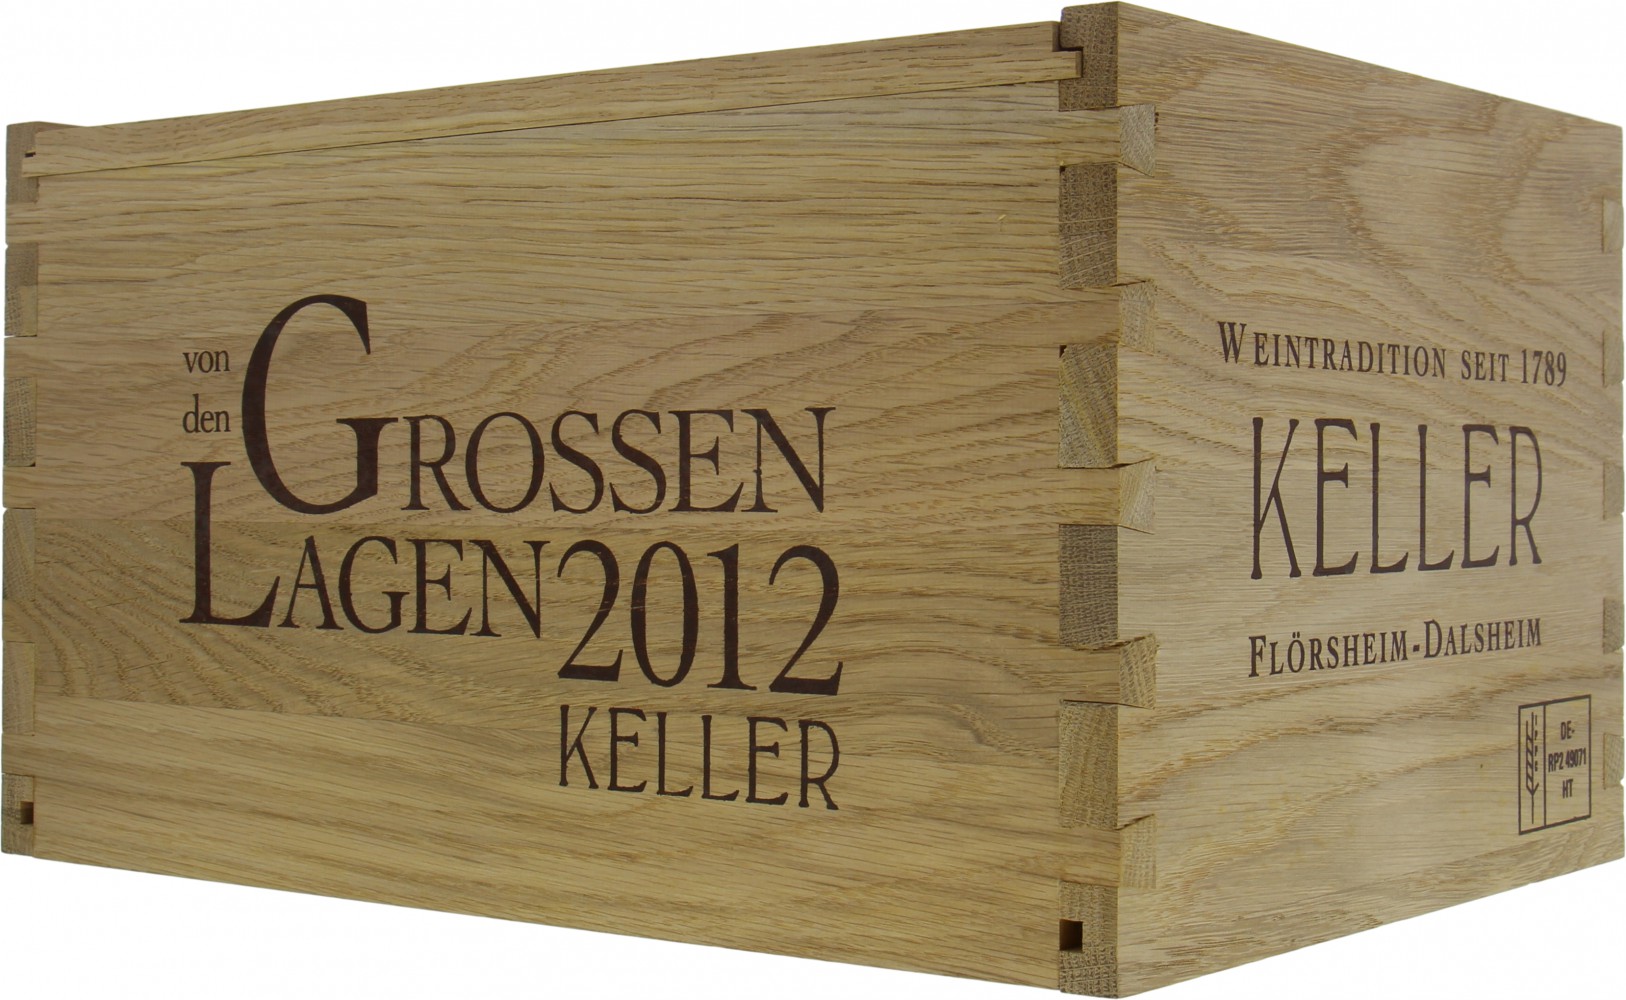 Weingut Keller - Kellerkiste von den Grossen Lagen 2012 Perfect